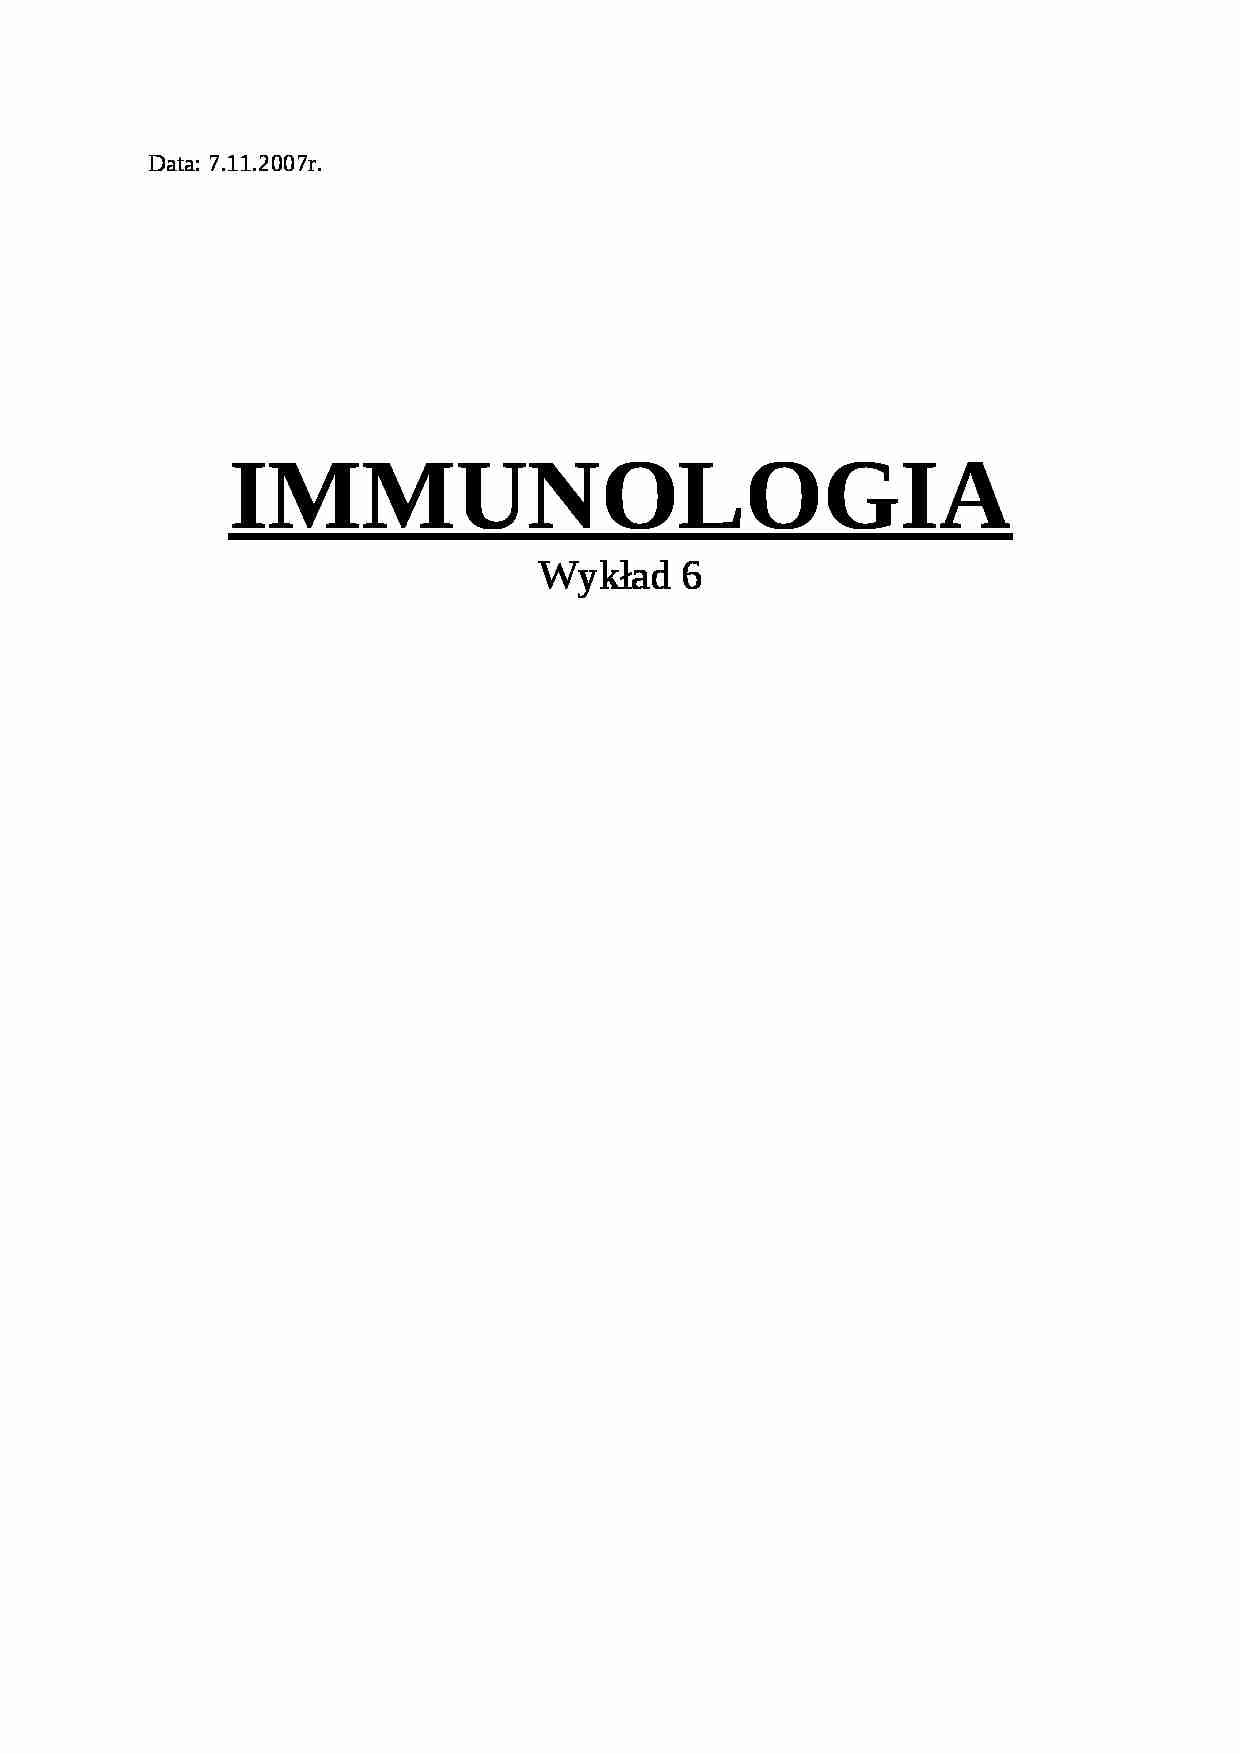 Immunologia - wykład 6 - strona 1